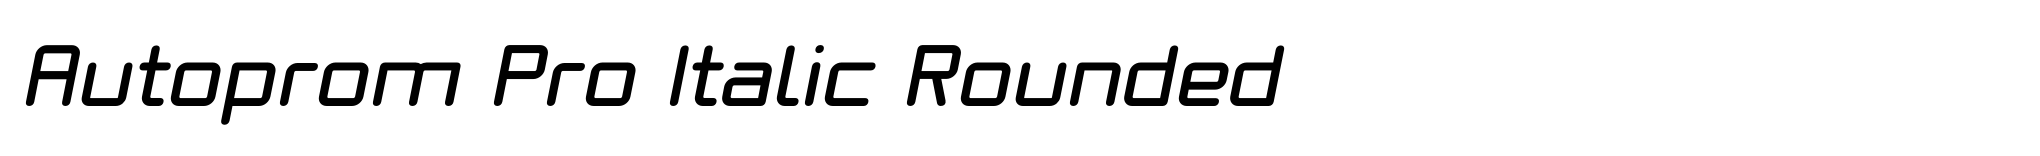 Autoprom Pro Italic Rounded image